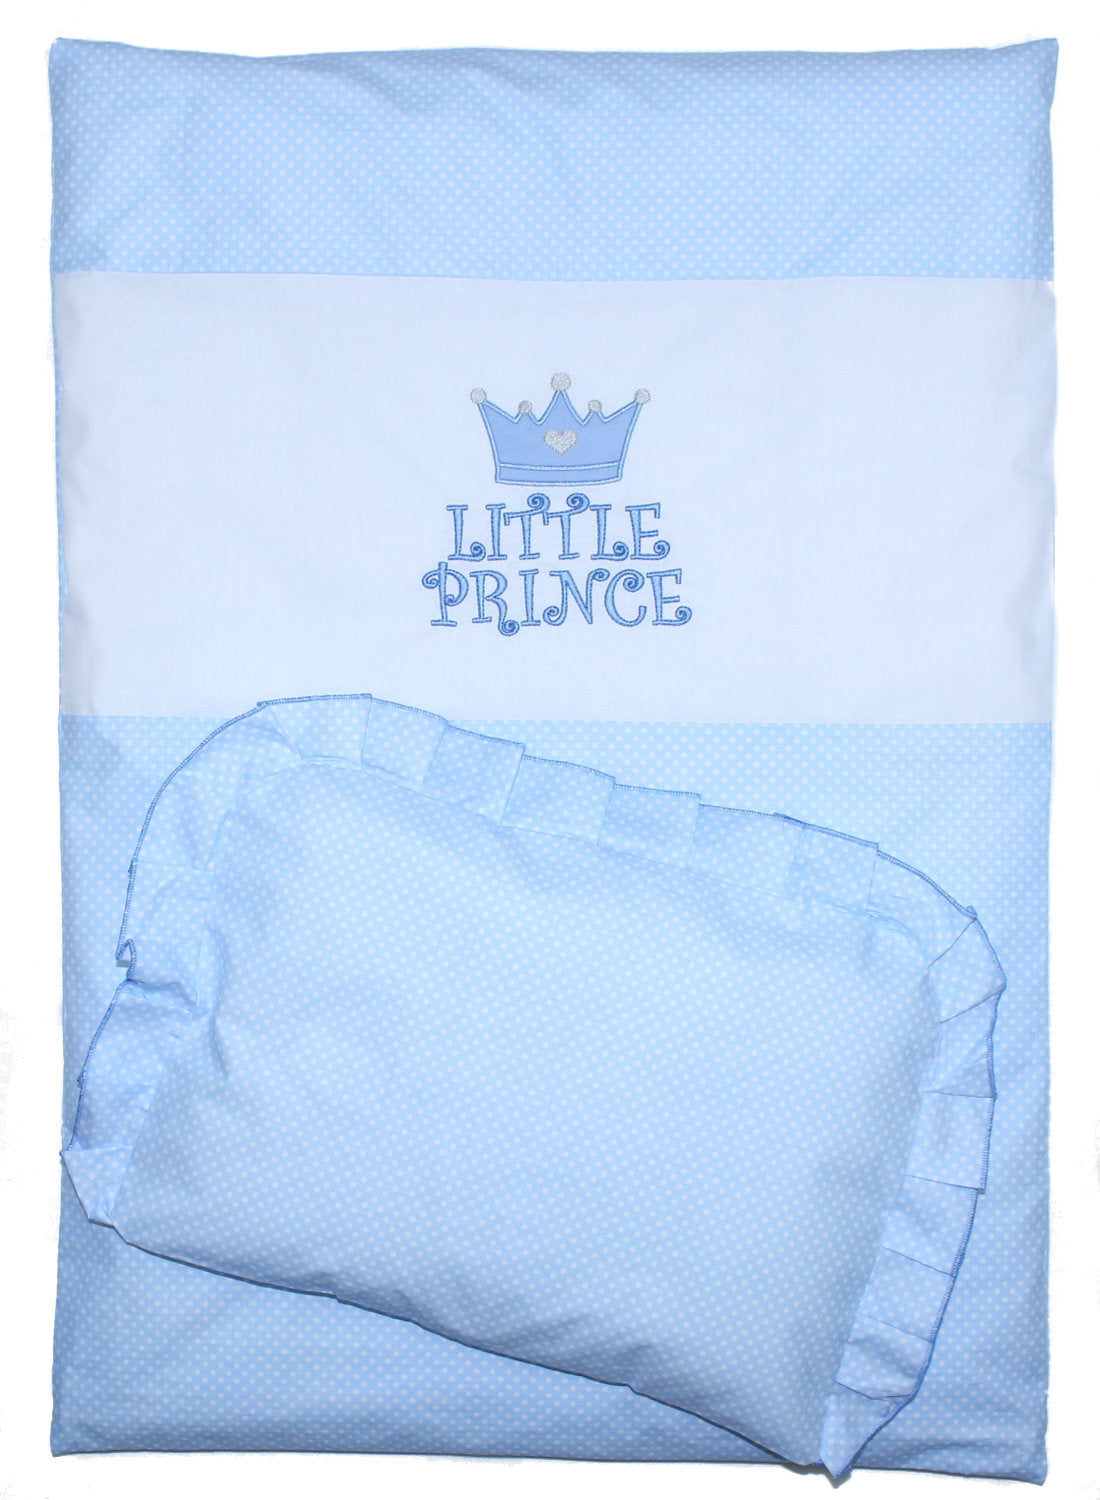 2- 4tlg Kinderwagenset - Prince - Punkten Blau - Bettwäsche für Kinderwagen Bezüge Decke Kissen